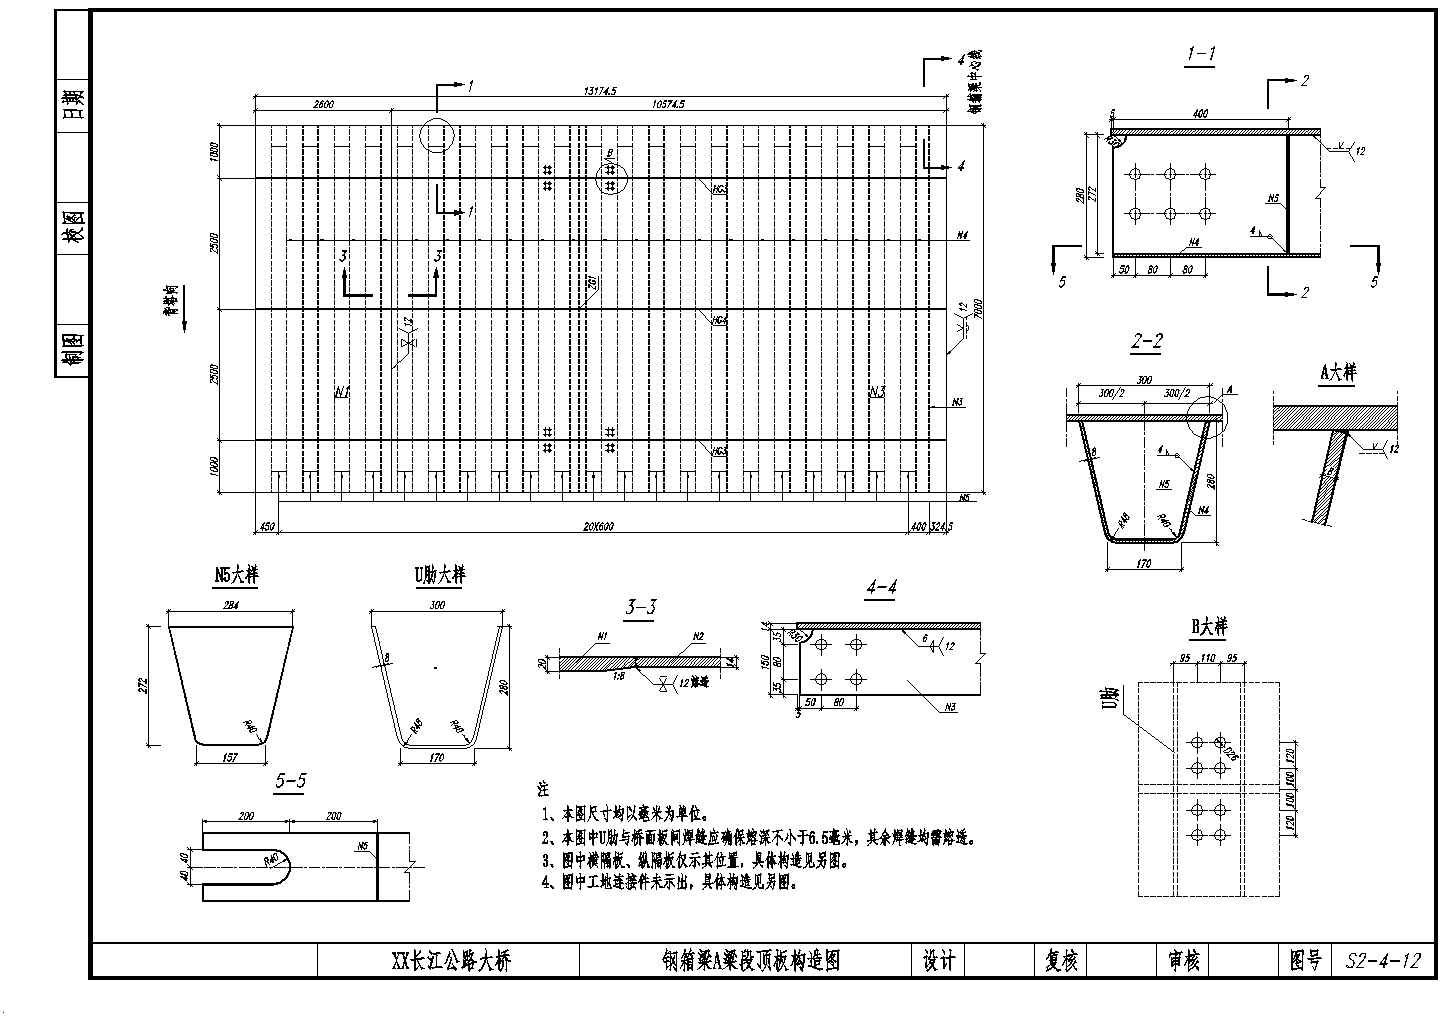 钢箱梁梁段顶板、底板及腹板构造节点详图-图一